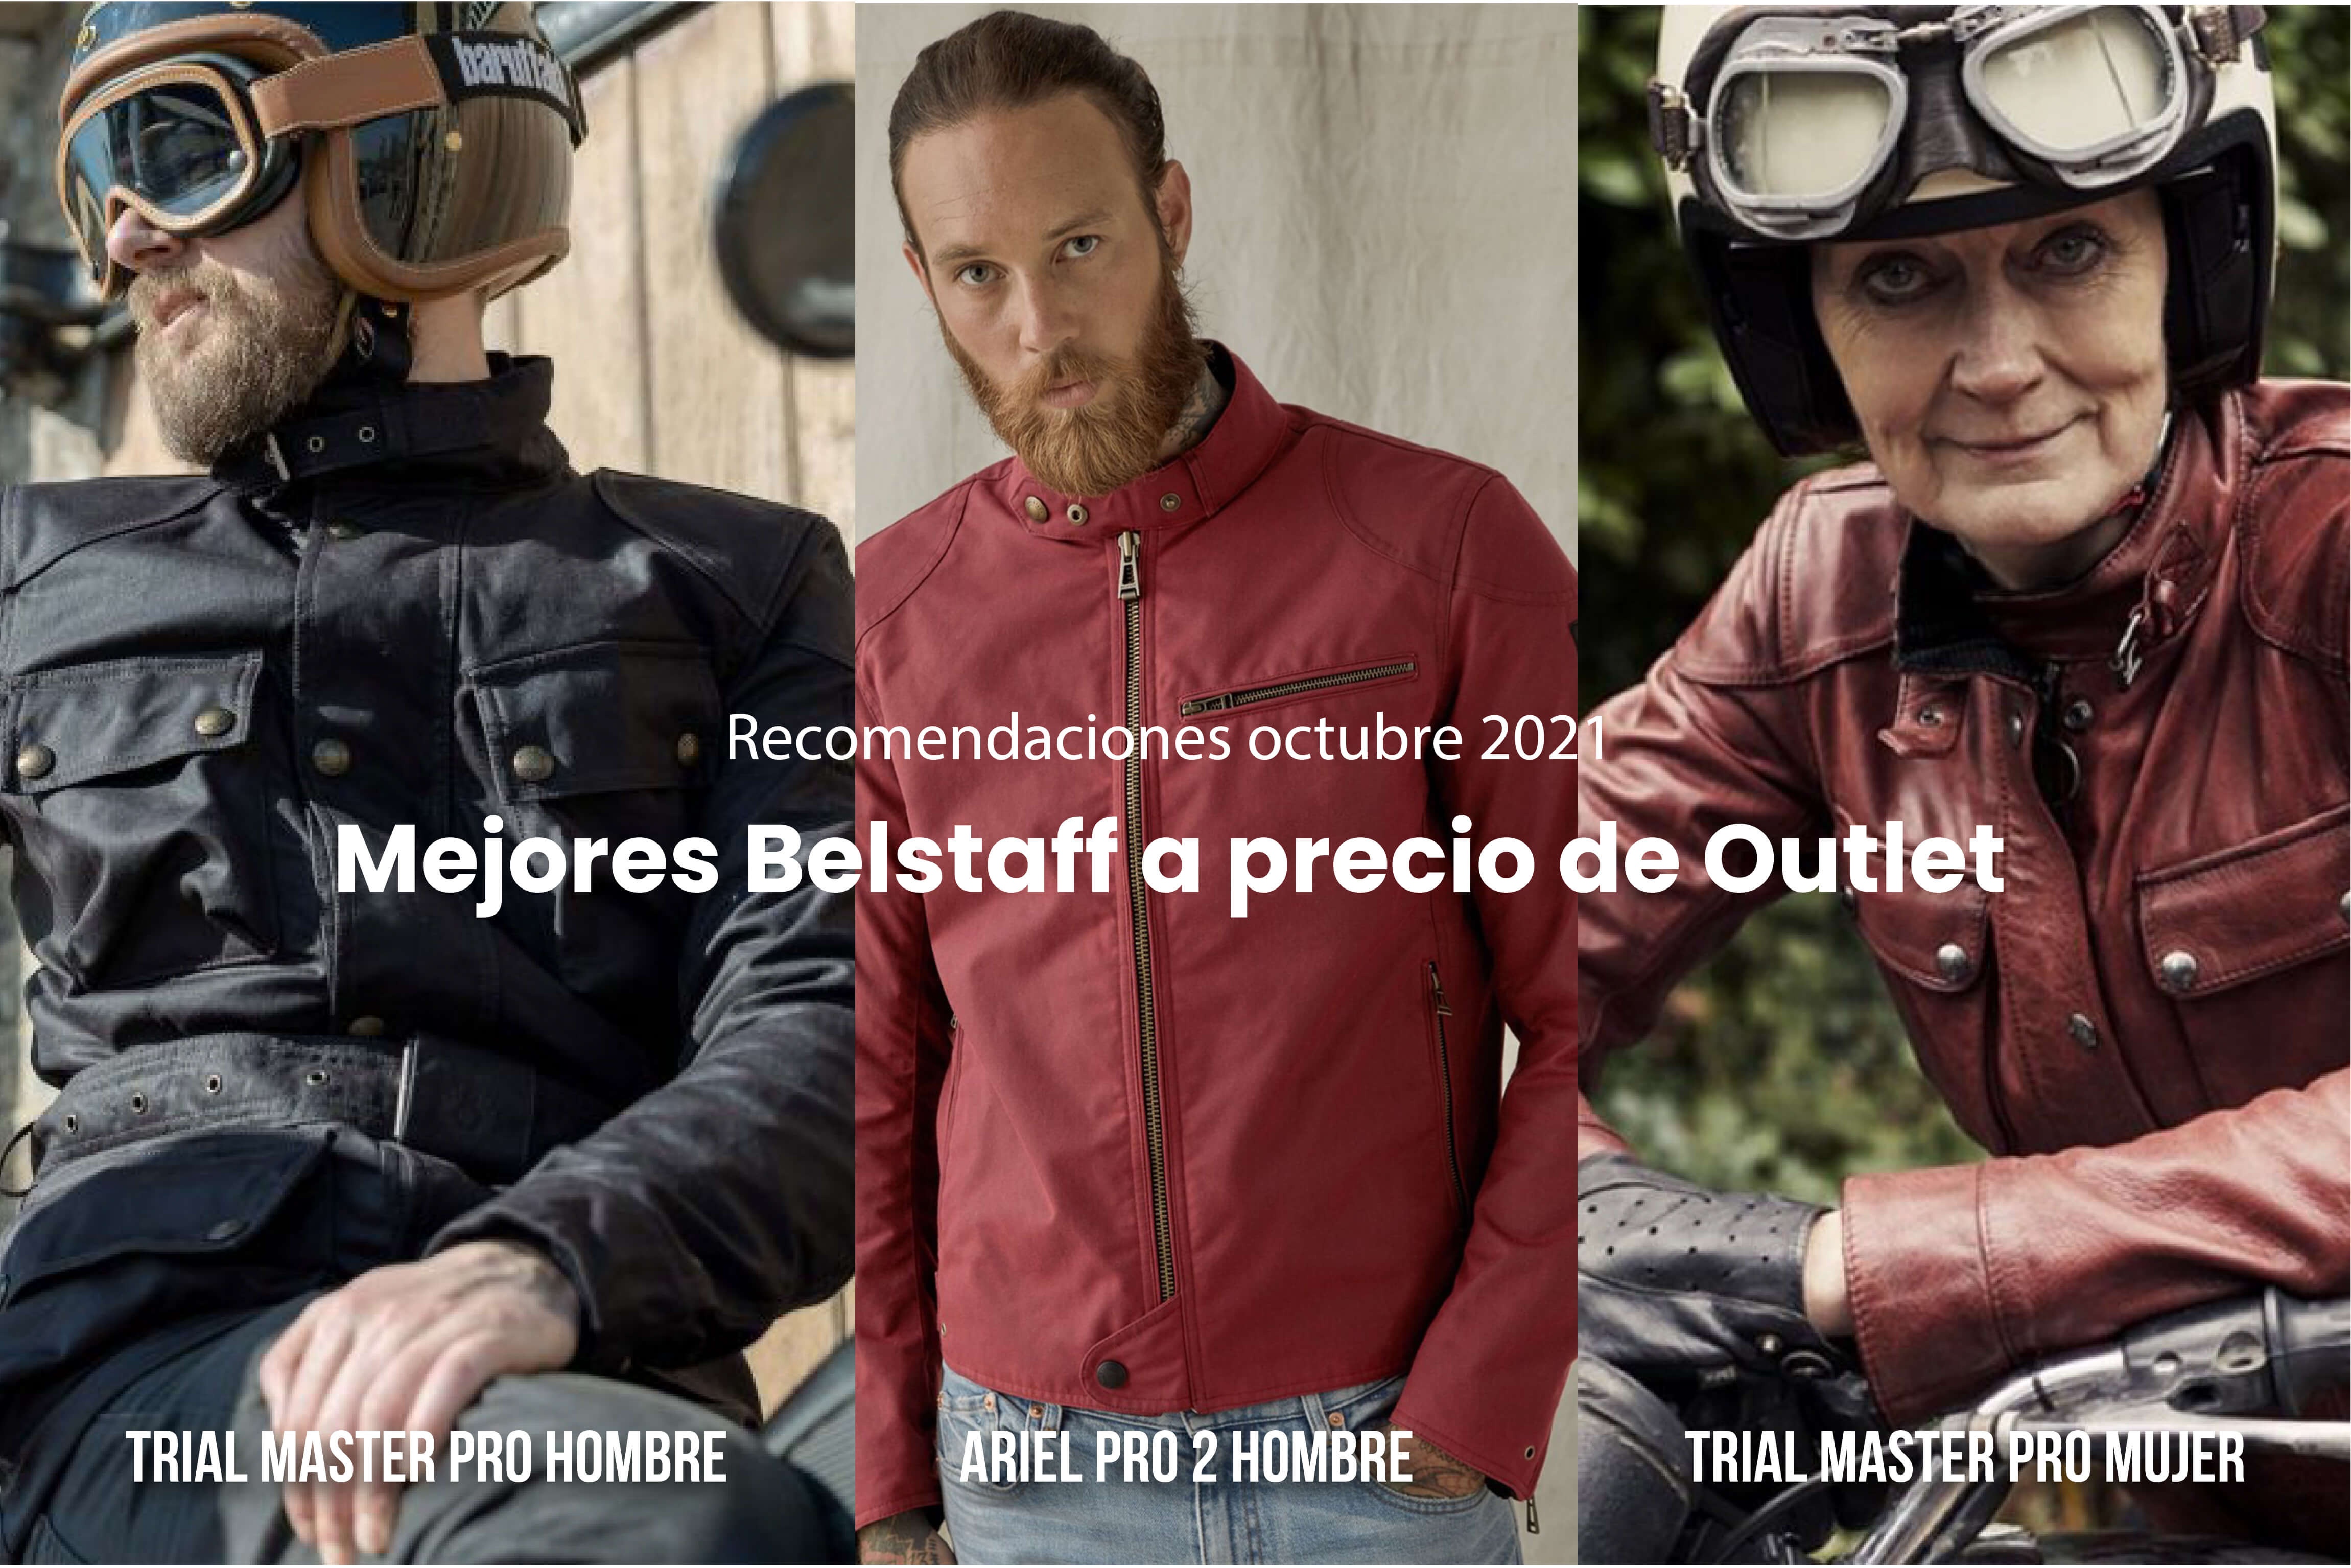 en términos de diccionario recurso Las mejores chaquetas Belstaff a precio de outlet, ¡perfecto para  motoristas! - Babiek Moto Adventure